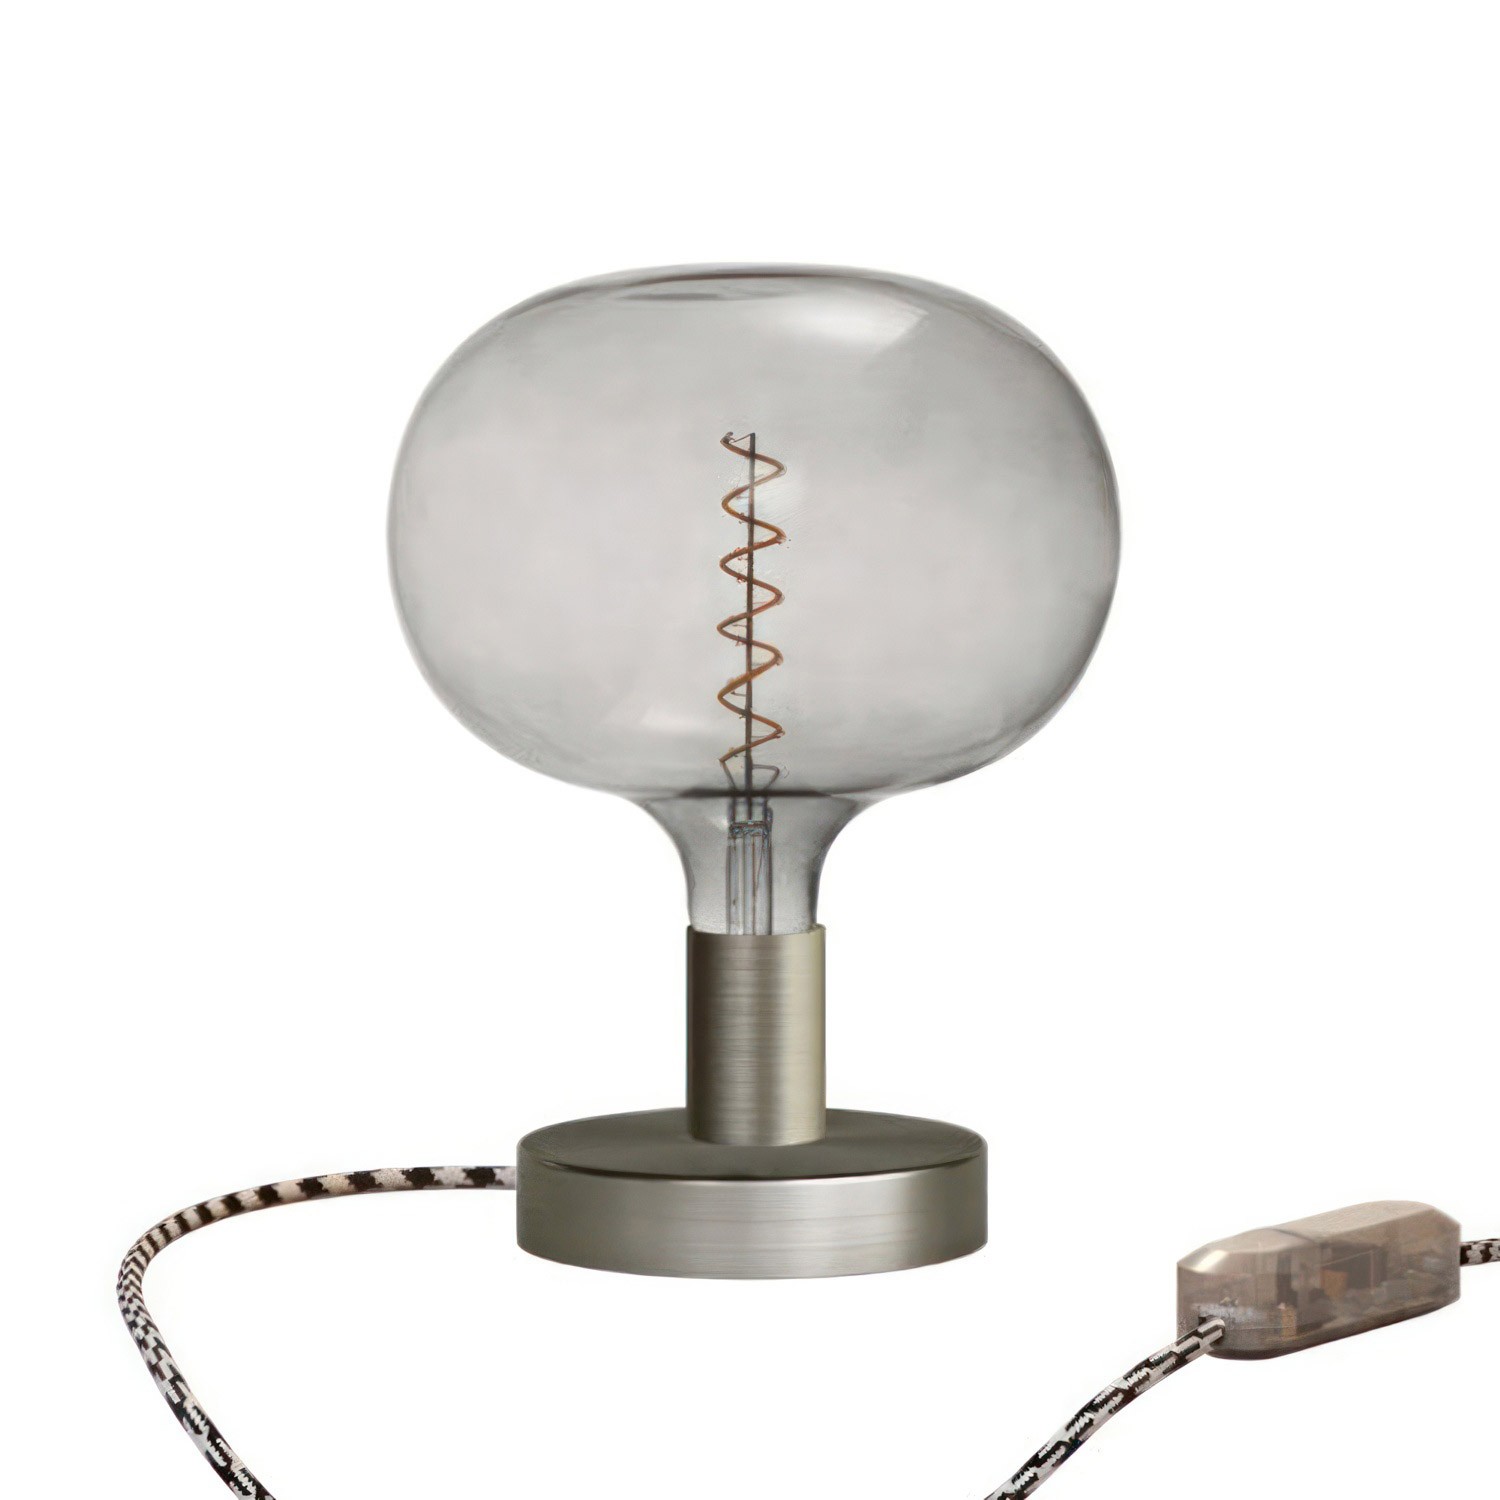 Lámpara de mesa metálica Posaluce Cobble con clavija de 2 polos